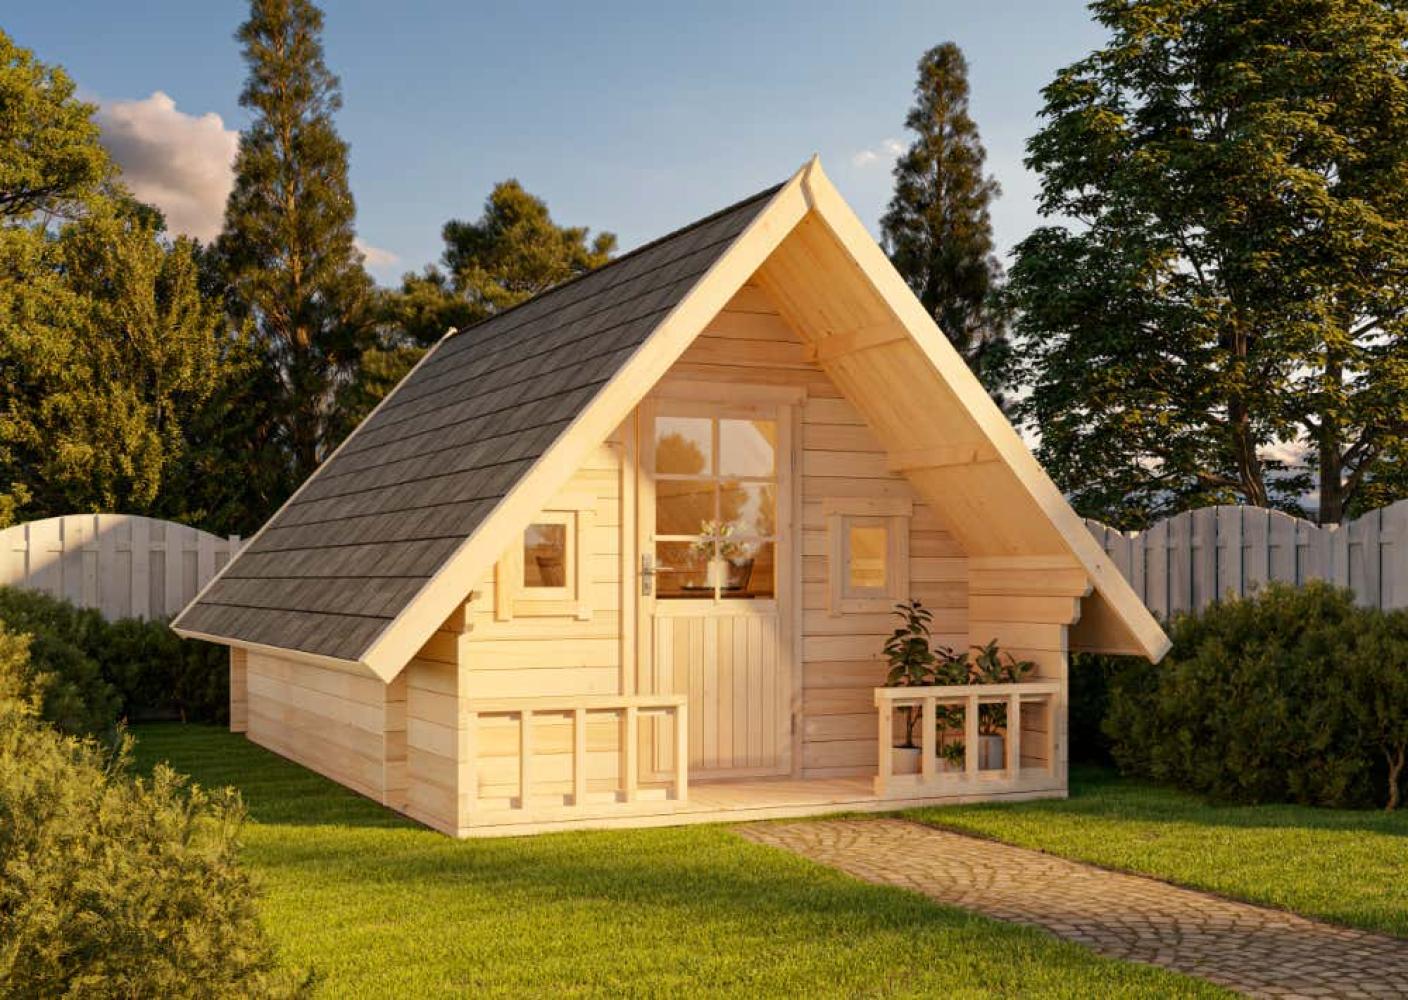 Alpholz Campinghouse 44 ISO Gartenhaus aus Holz Holzhaus mit 44 mm Wandstärke inklusive Terrasse Blockbohlenhaus mit Montagematerial Bild 1